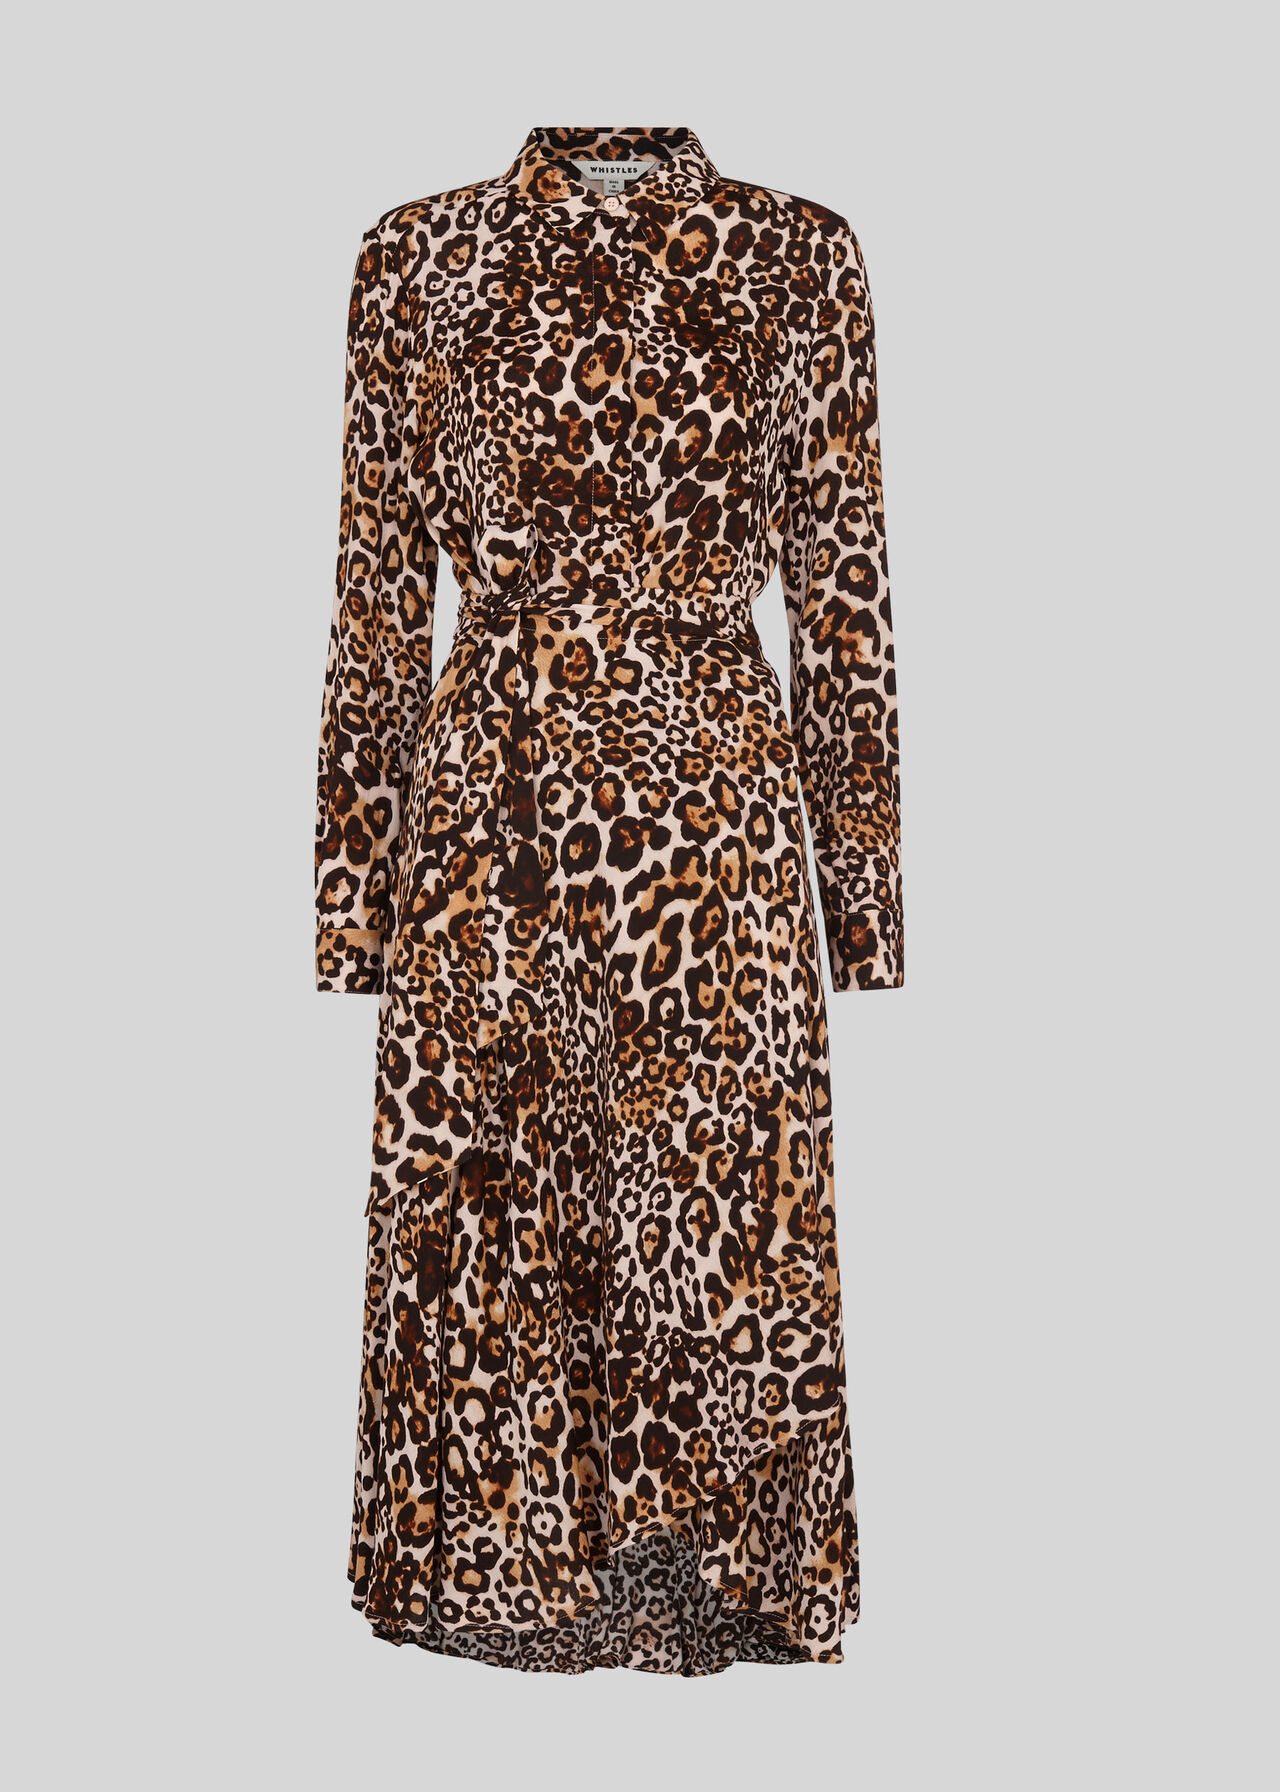 Animal Print Esme Wrap Dress Leopard Print